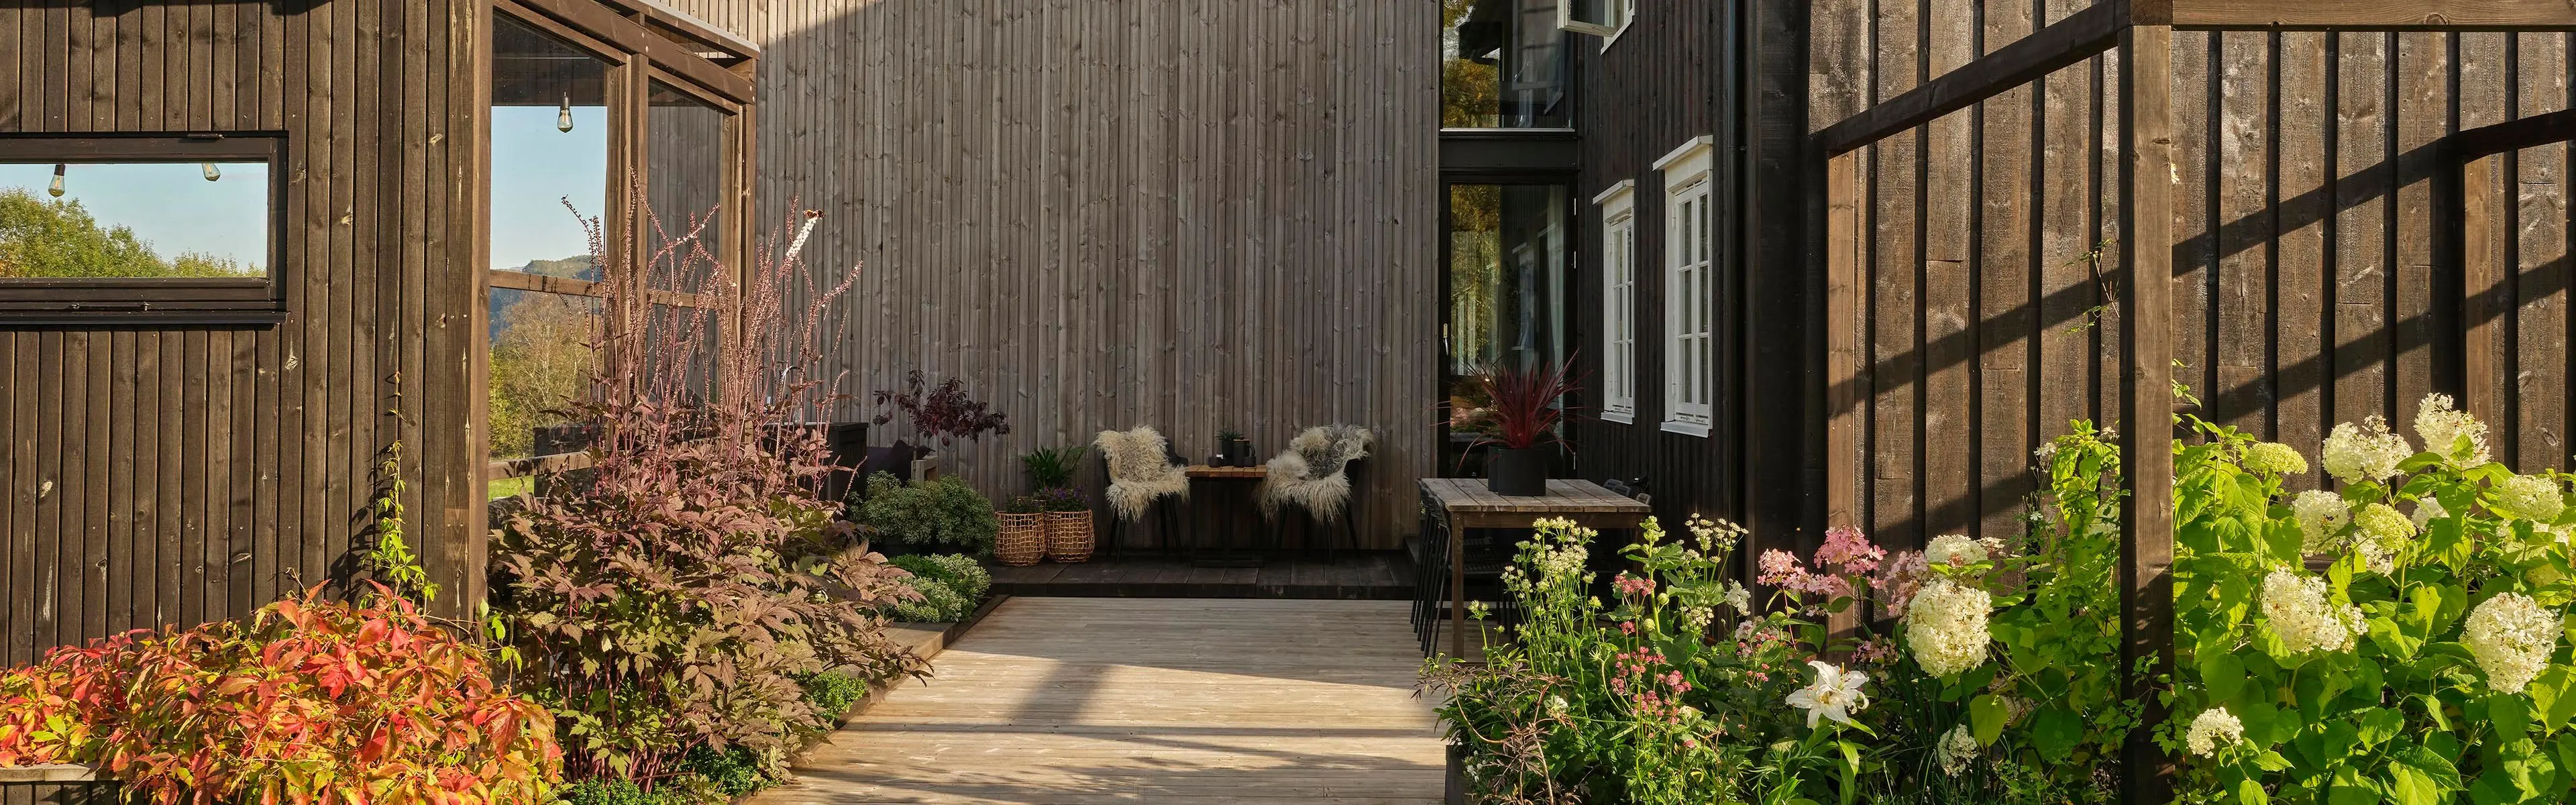 Uteplass og terrasse med pergola og varme farger på terrassebord som er en av årets hagetrender.